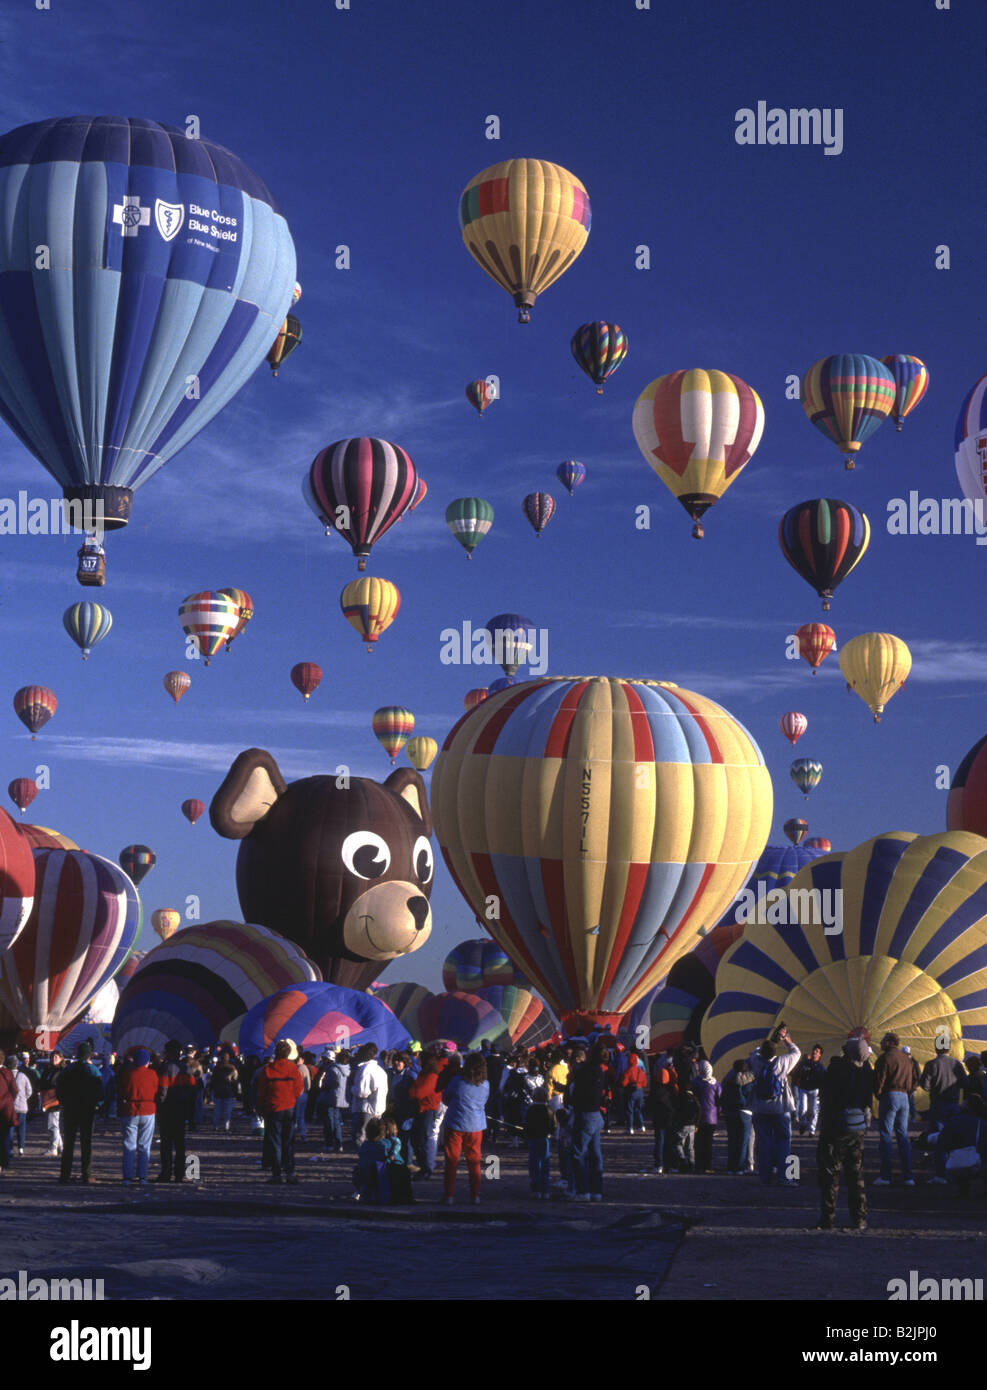 Feria globos aerostáticos fotografías imágenes de alta - Alamy